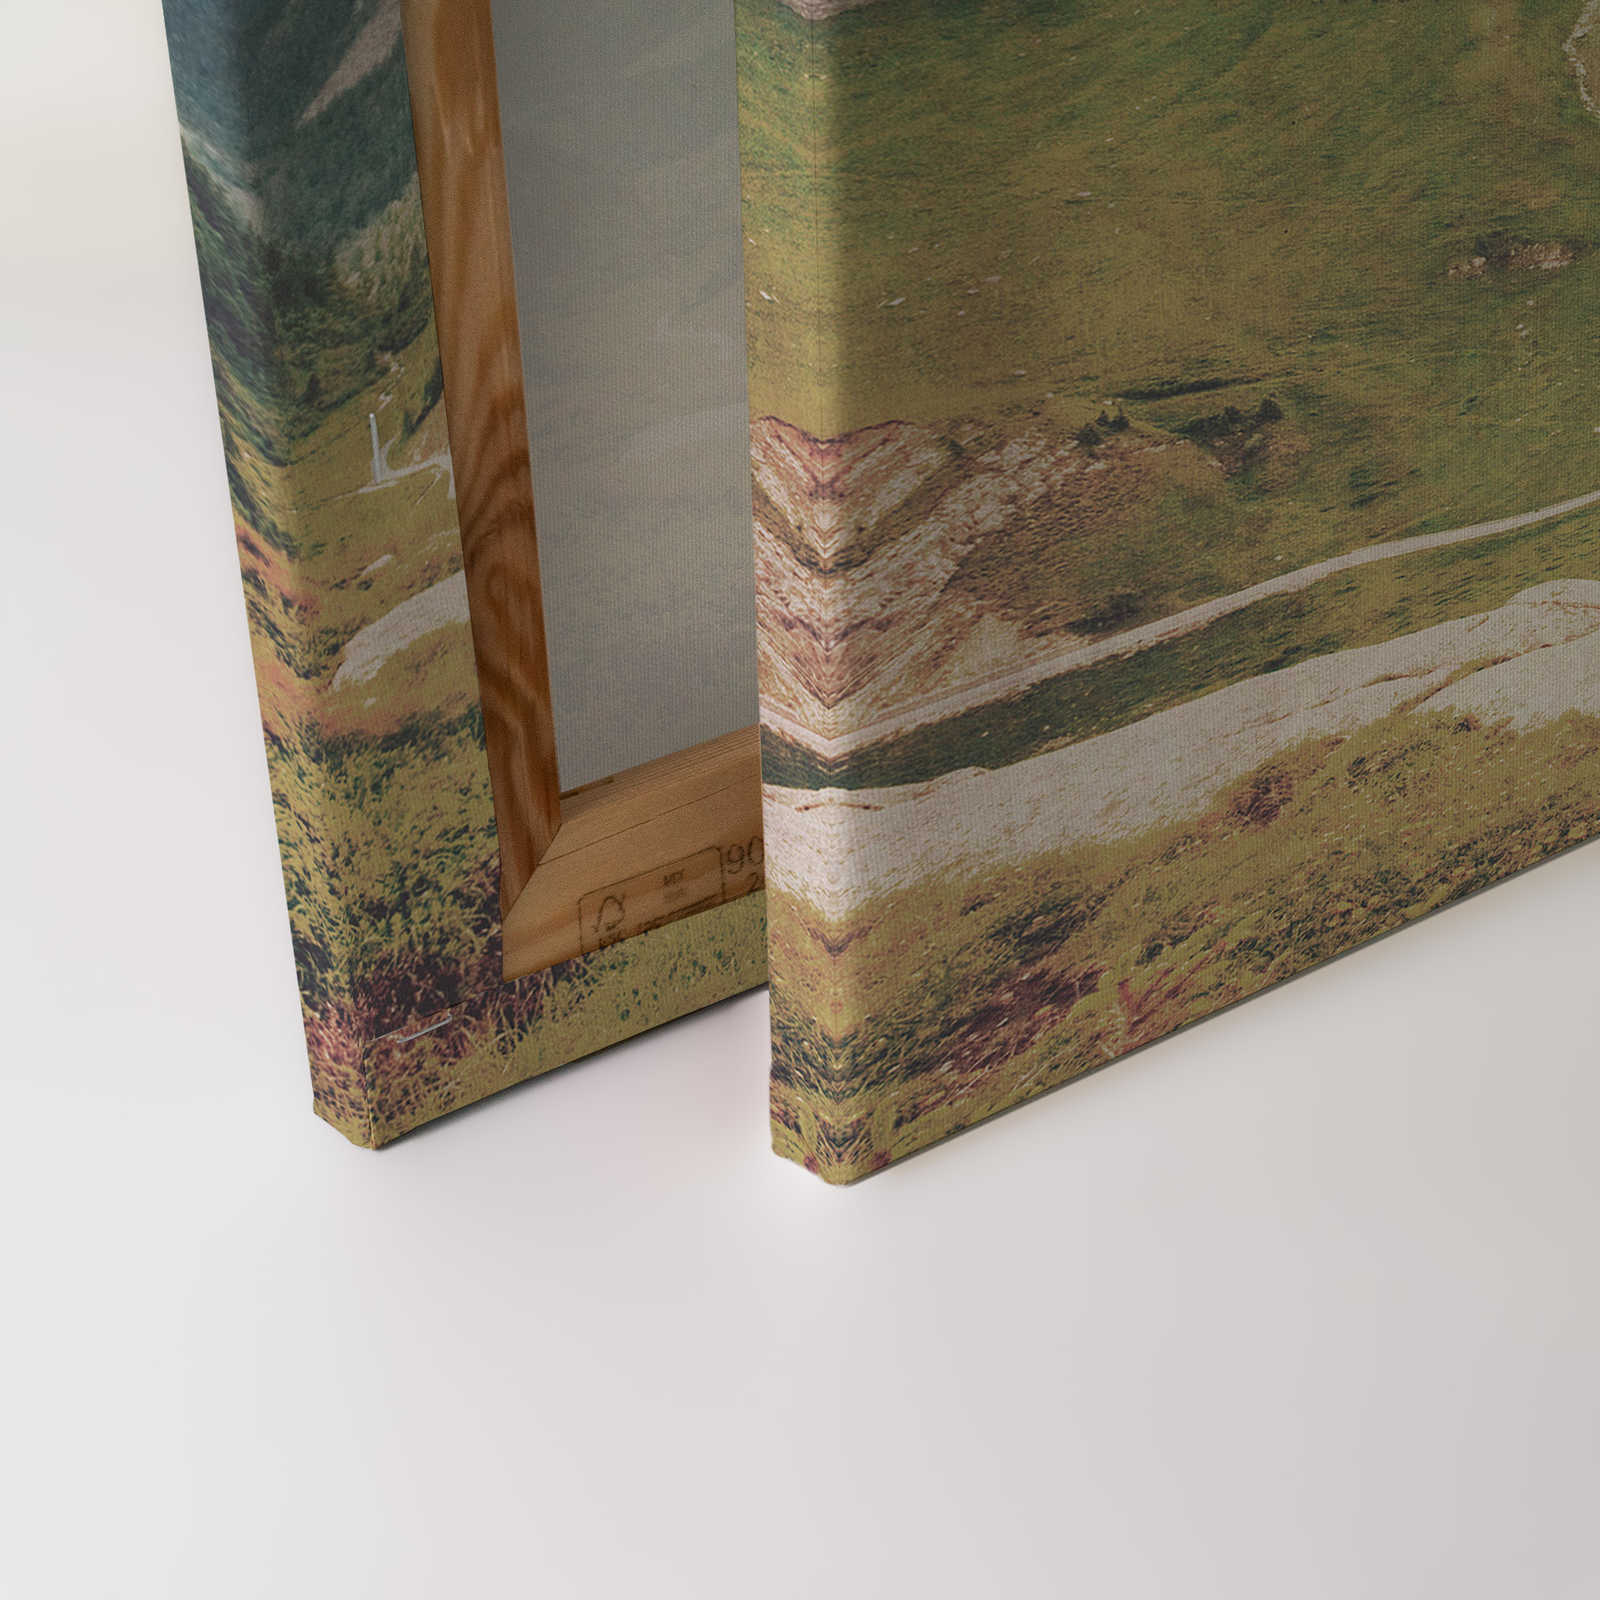             Dolomiti 2 - Pintura en lienzo Fotografía retro Dolomitas en estructura de papel secante - 0,90 m x 0,60 m
        